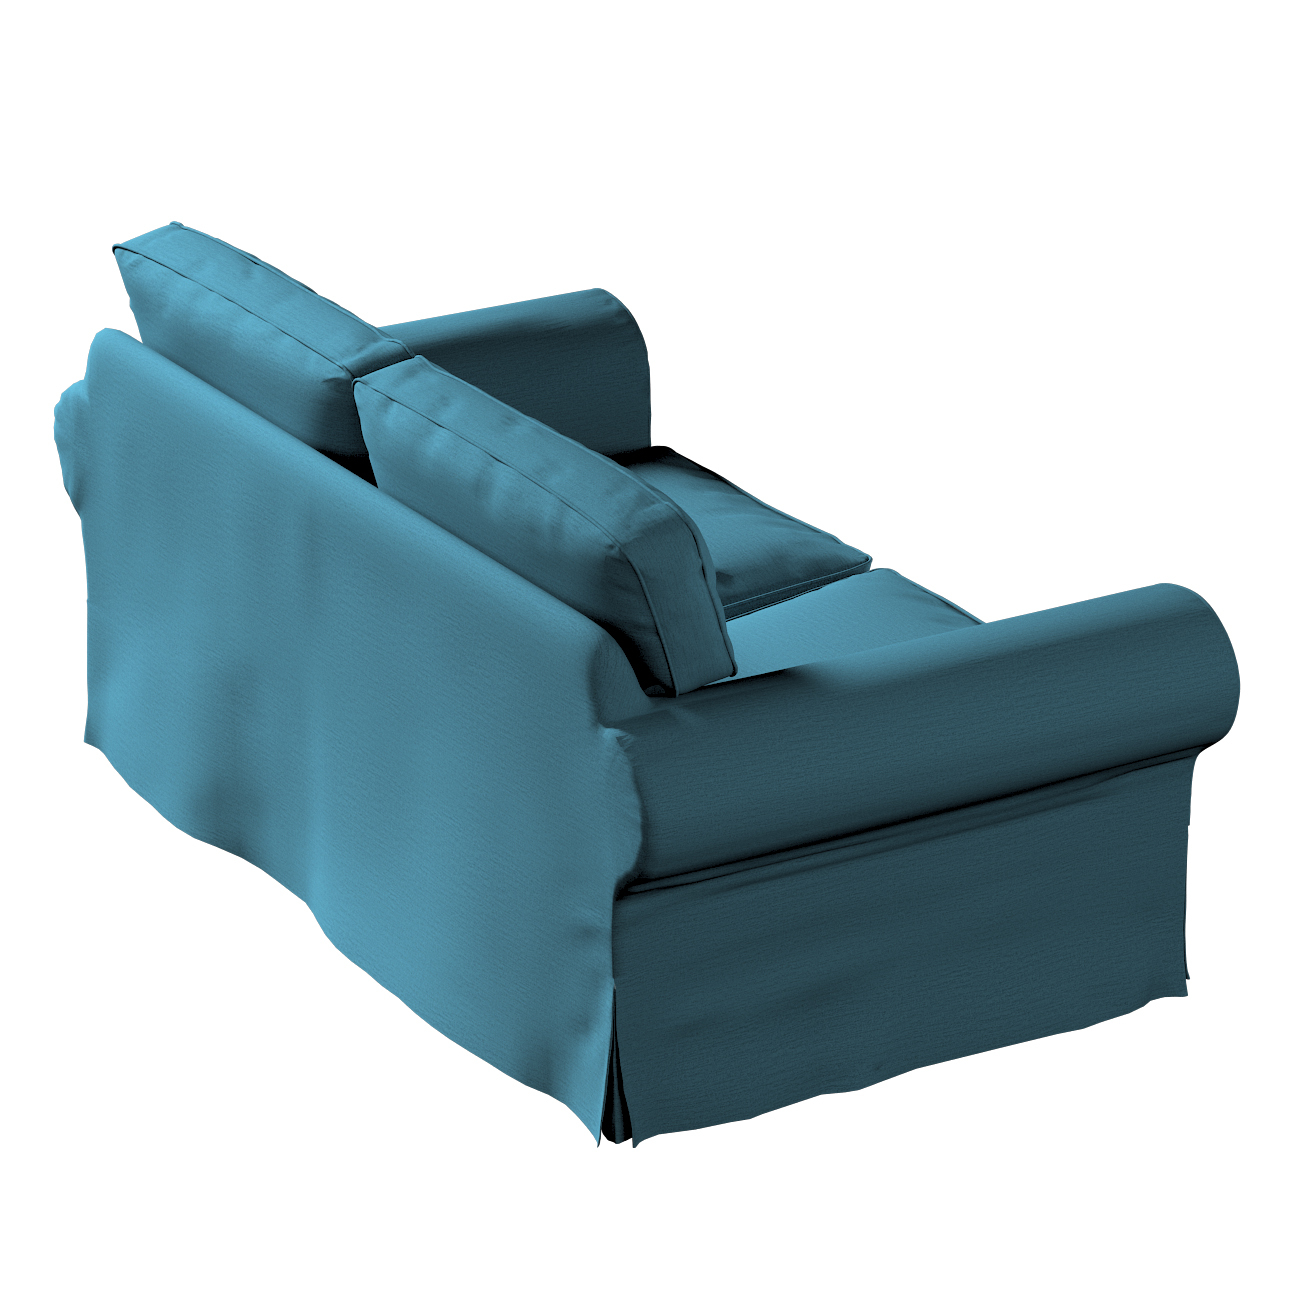 Bezug für Ektorp 2-Sitzer Sofa nicht ausklappbar, dunkelblau, Sofabezug für günstig online kaufen